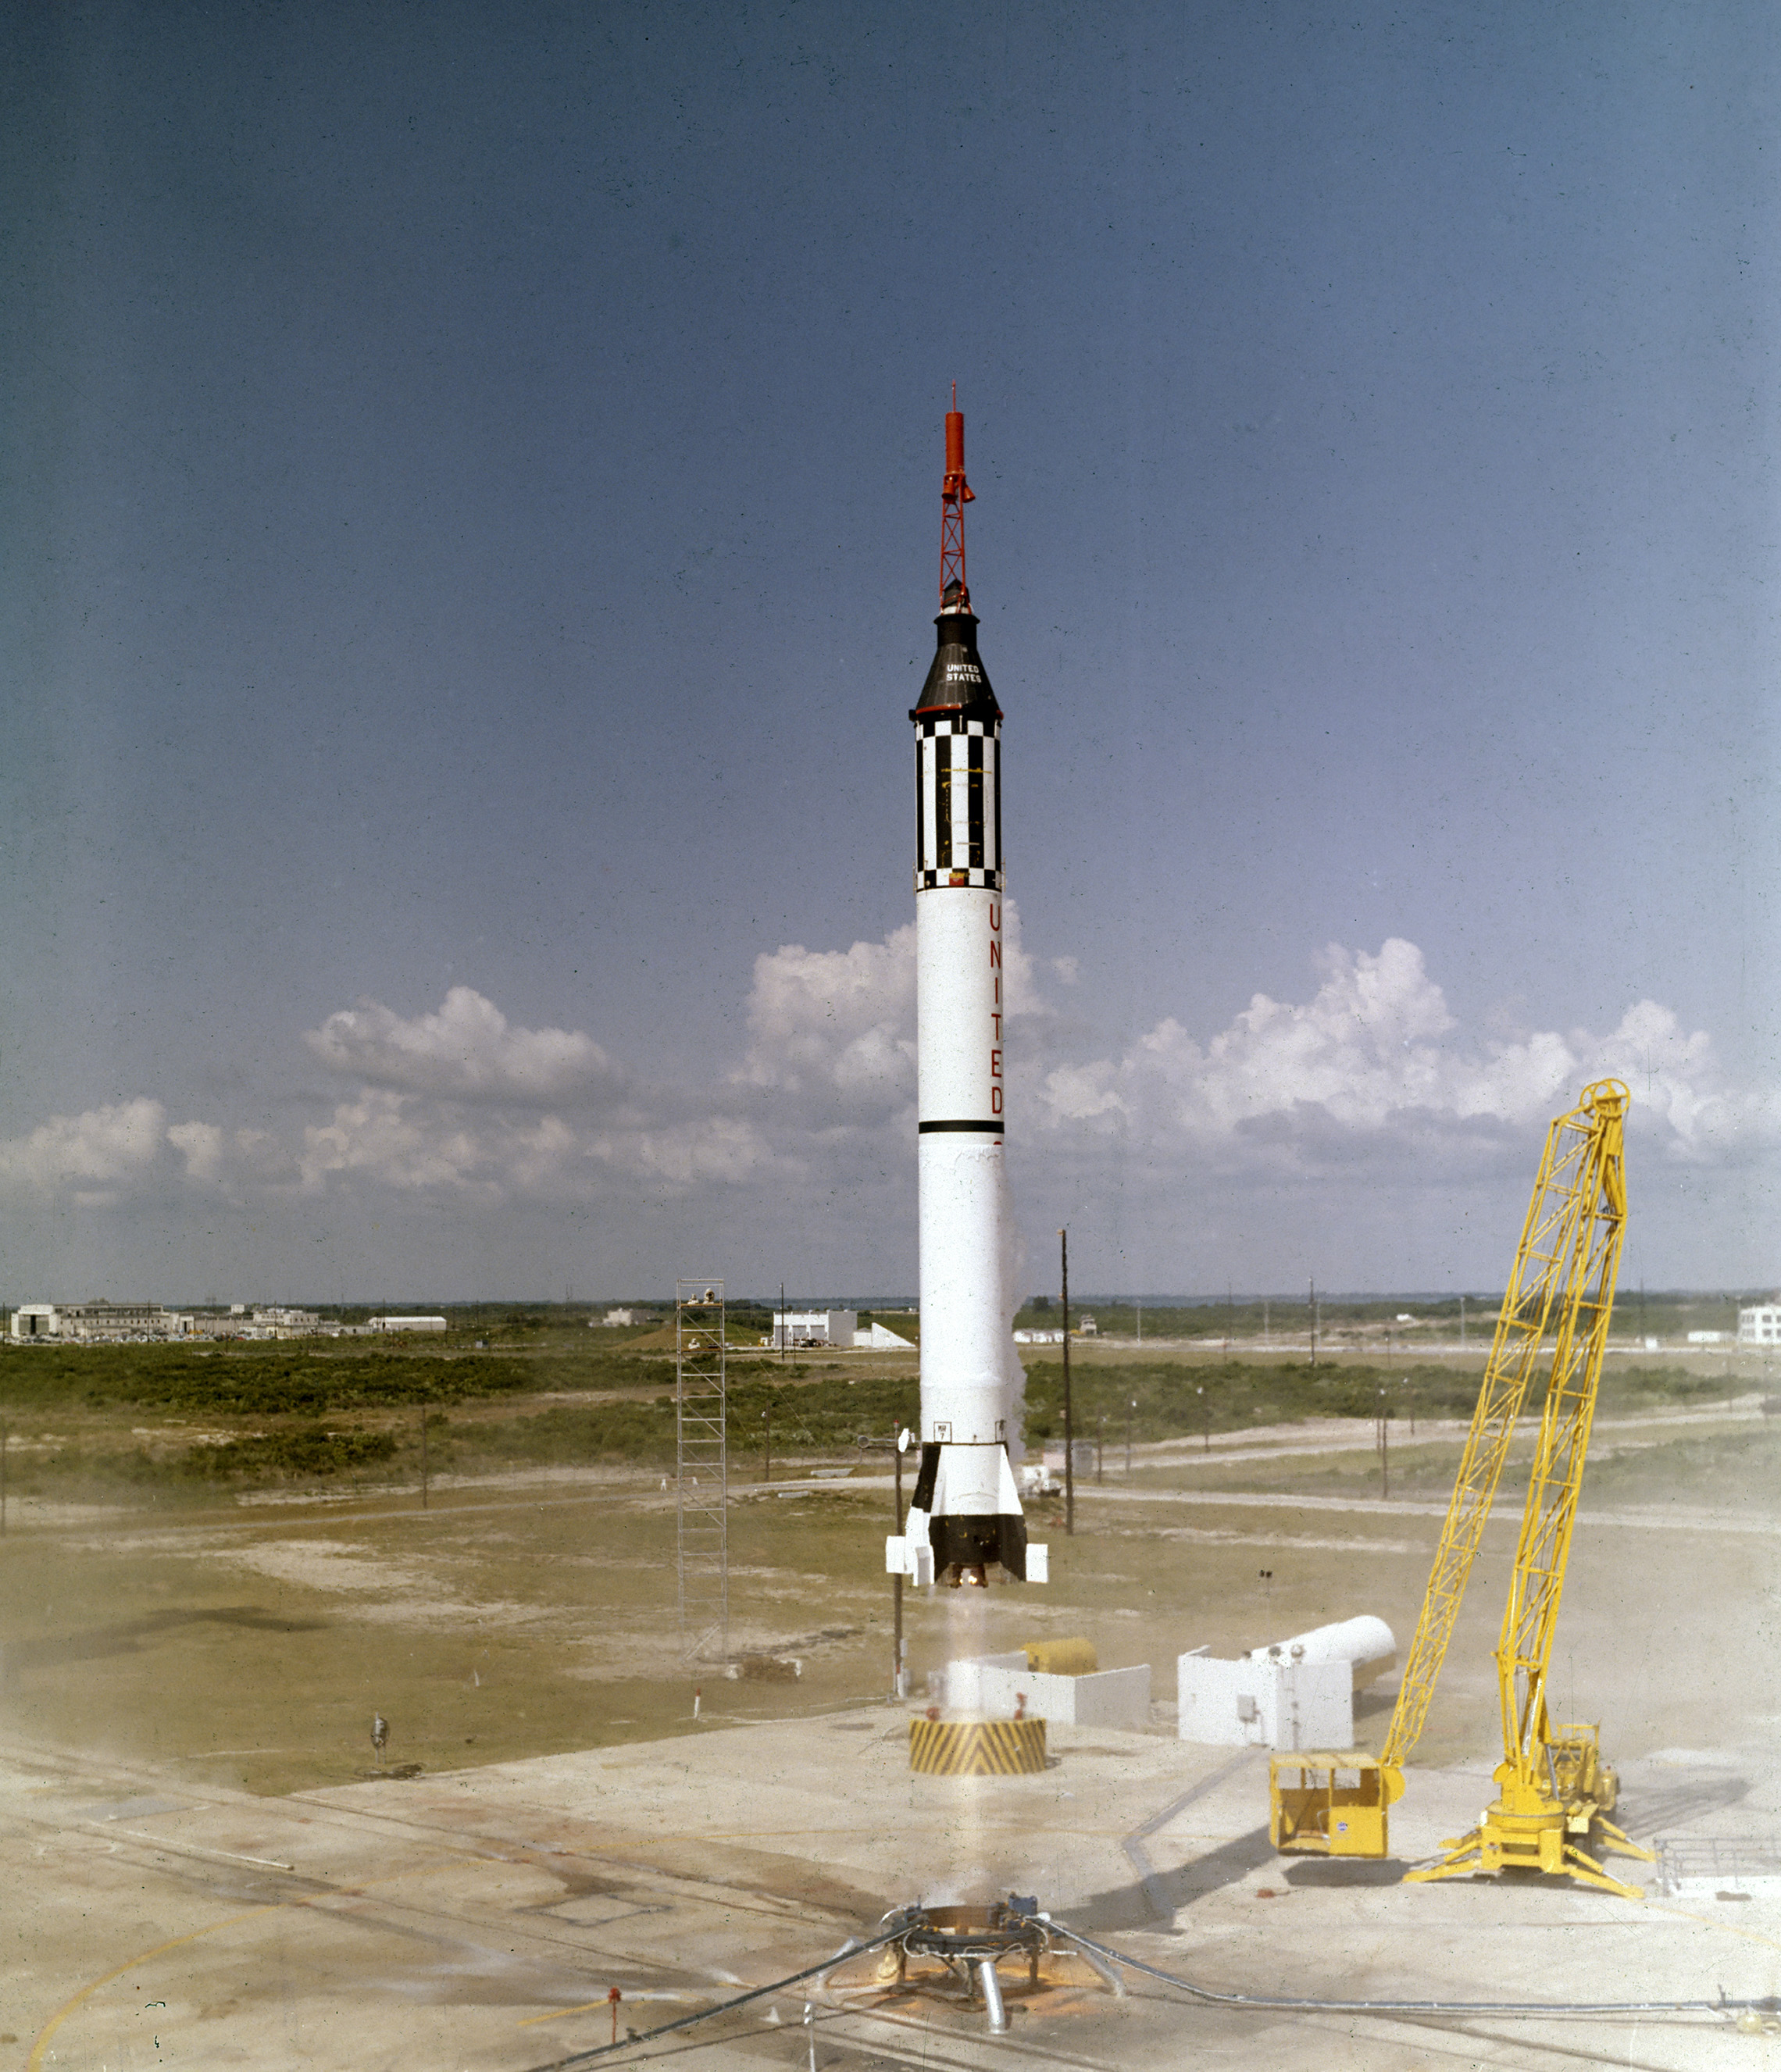 Astronaut Alan B. Shepard, jr.løfter av I Freedom 7 Mercury-romfartøyet 5. Mai 1961. Dette Tredje Flyet Av Mercury-Redstone (MR-3) - kjøretøyet, utviklet Av Dr. wernher von Braun og rocket team I Huntsille, Alabama, var Det første bemannede romoppdraget For Usa. I løpet av 15-minutters suborbitalflyvning nådde Shepard en høyde på 115 miles og reiste 302 miles downrange. (NASA)